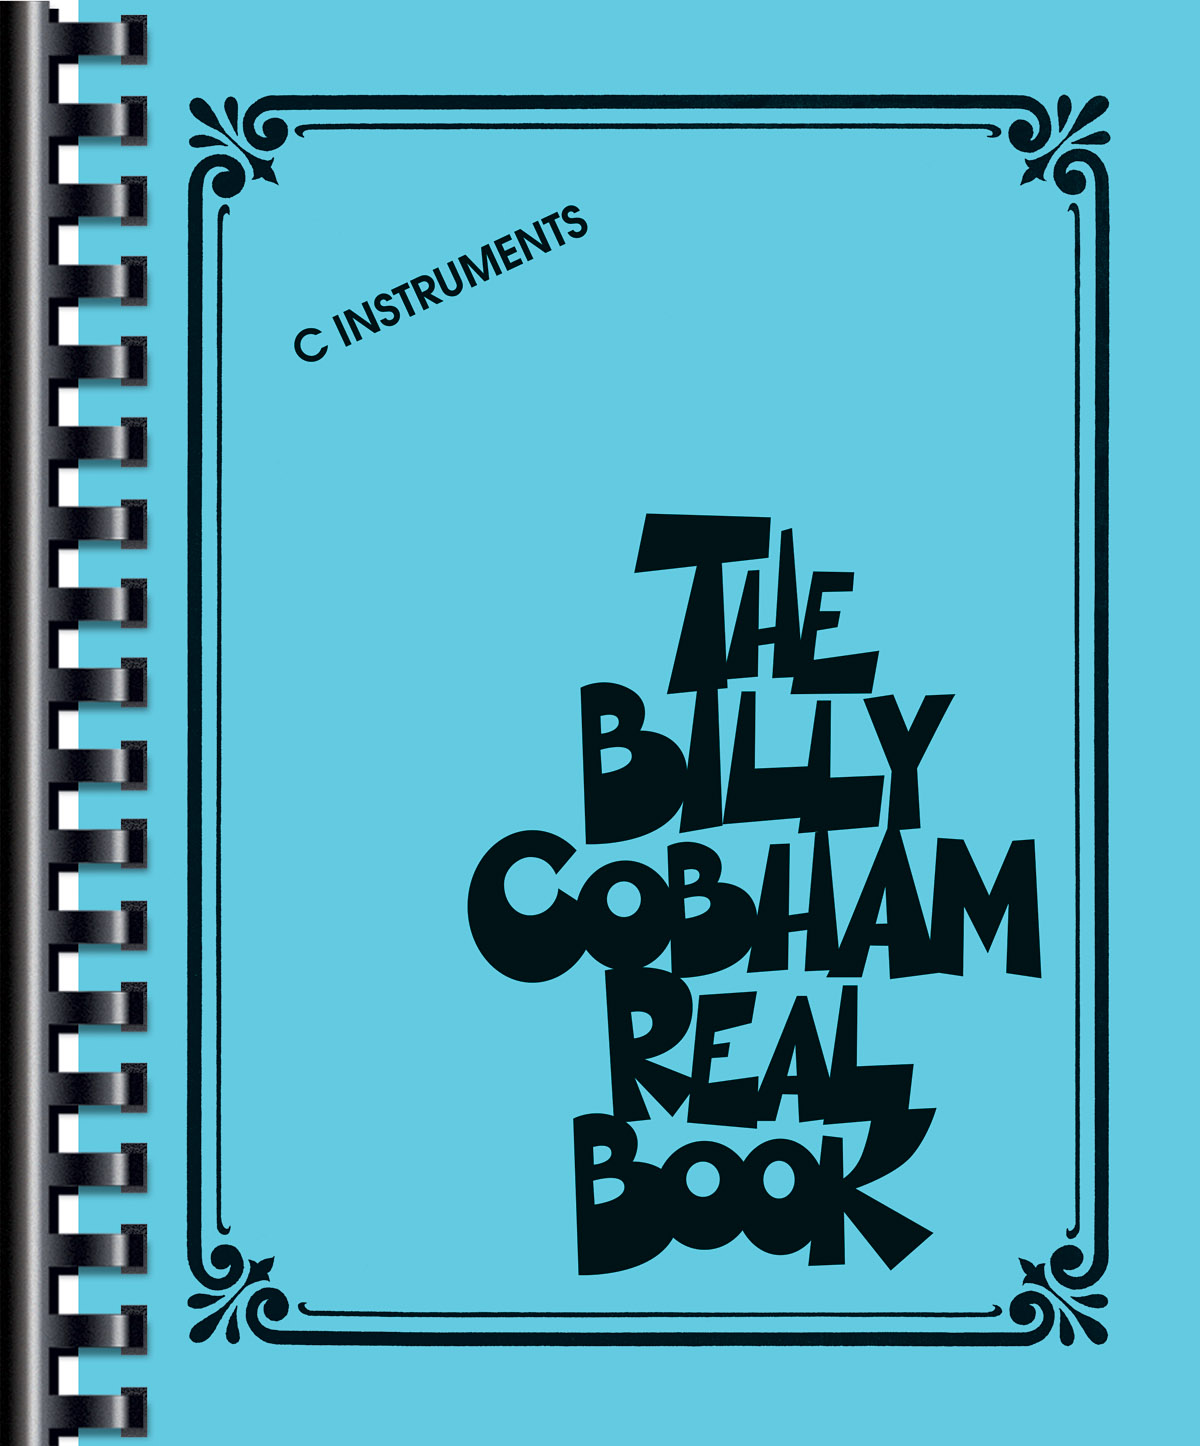 The Billy Cobham Real Book - C Instruments - melodie pro nástroje v ladění C